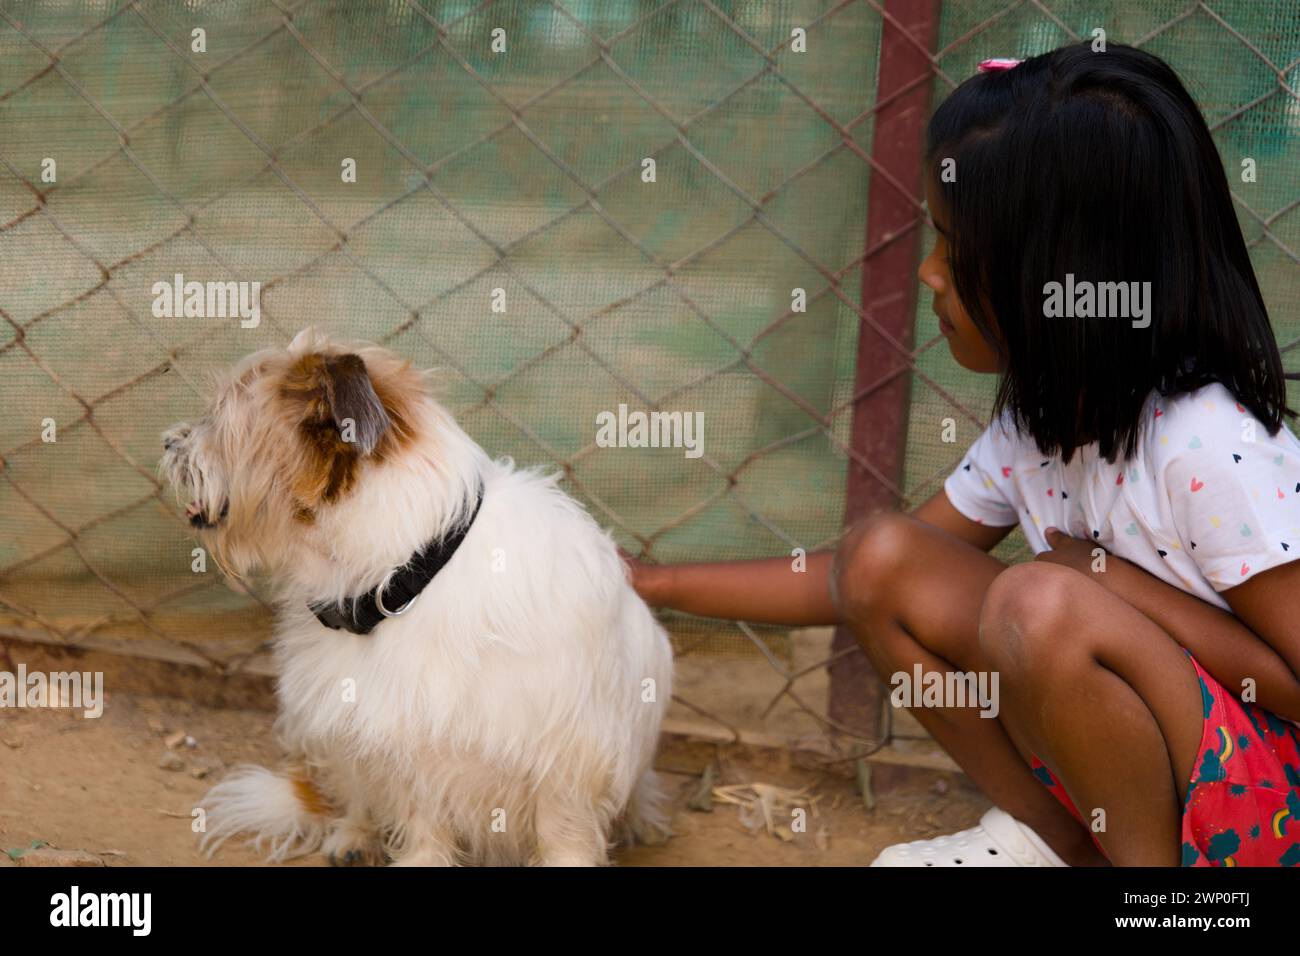 Una joven asiática se arrodilla en una perrera bañada por el sol en un refugio de animales rurales, conectándose con un perro amigable Foto de stock